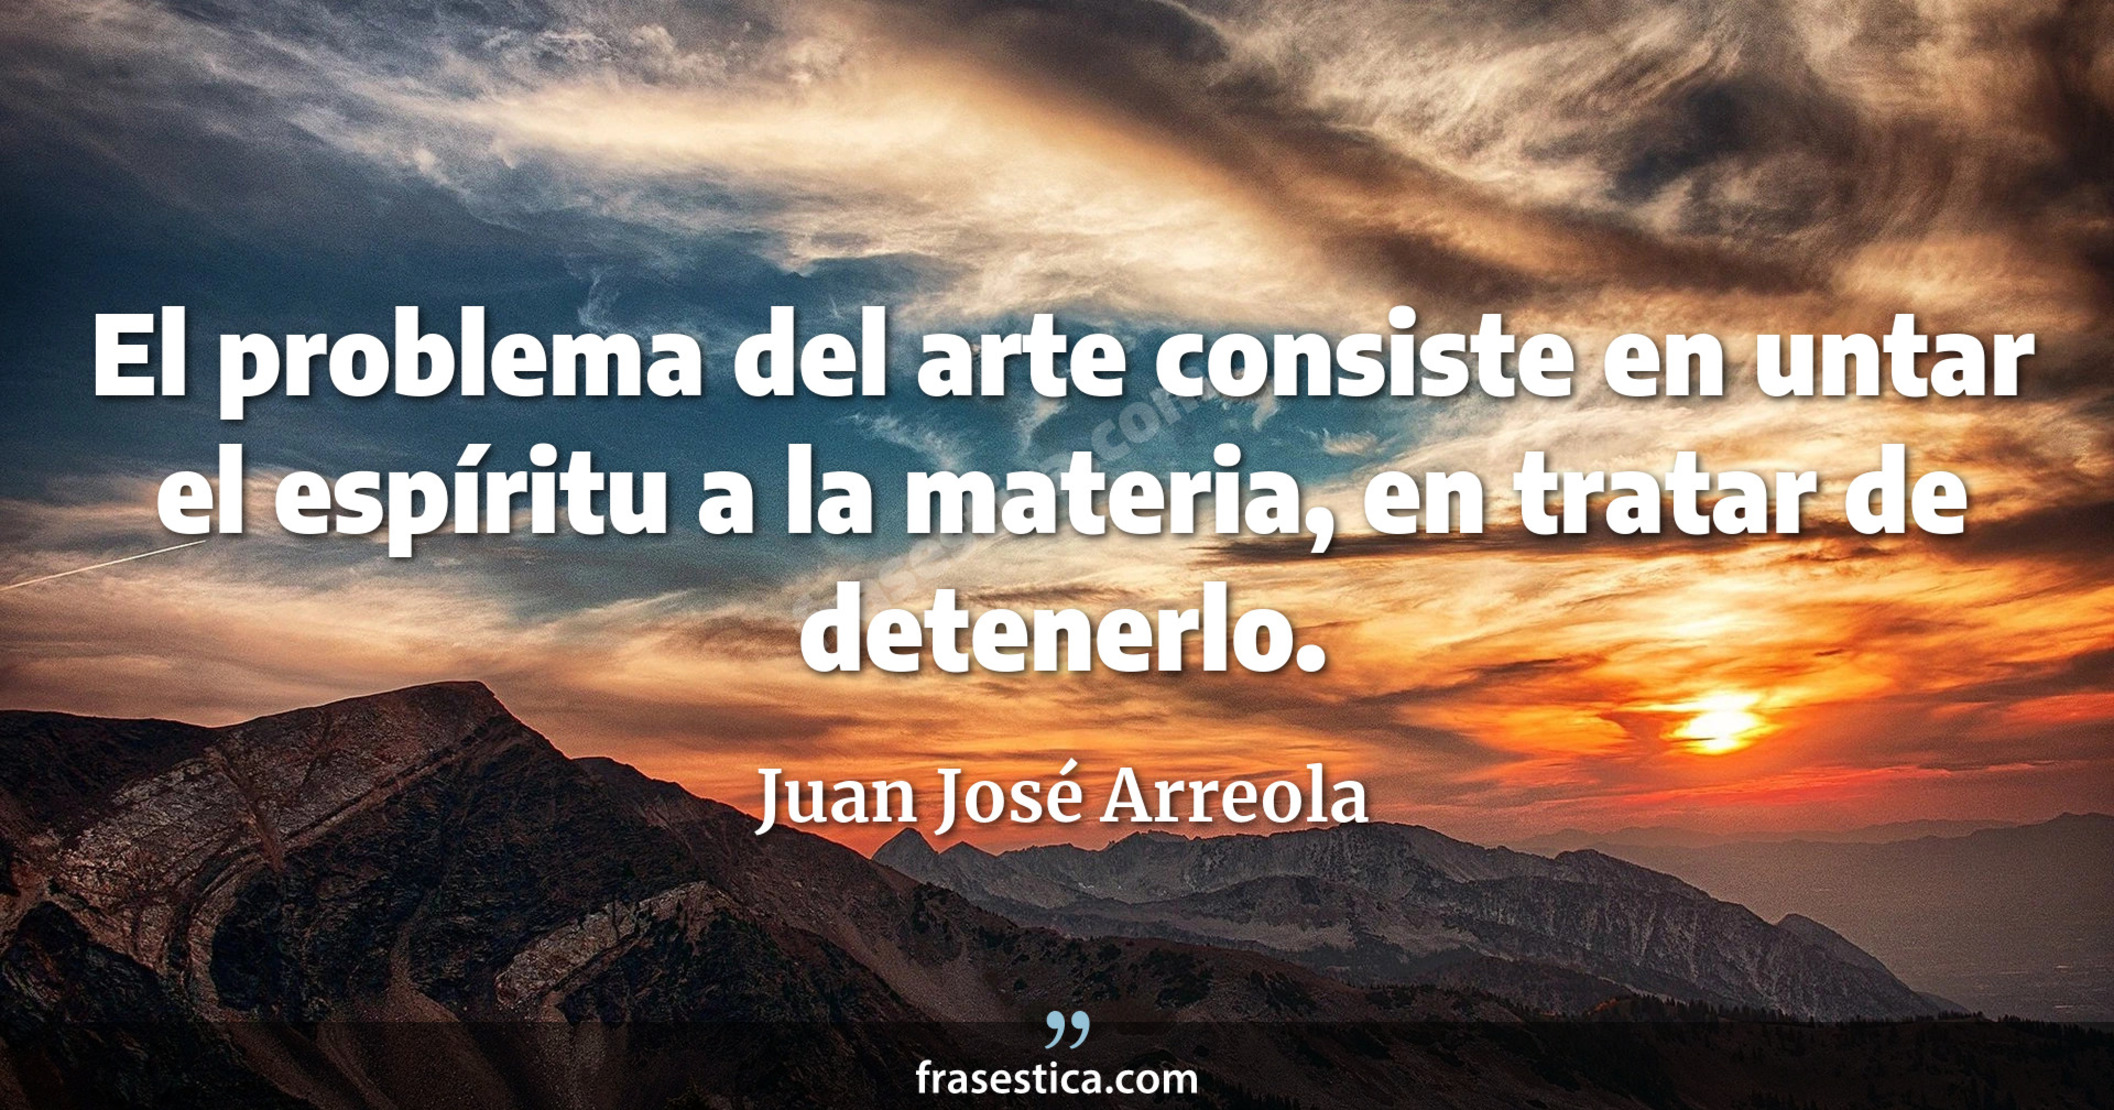 El problema del arte consiste en untar el espíritu a la materia, en tratar de detenerlo. - Juan José Arreola